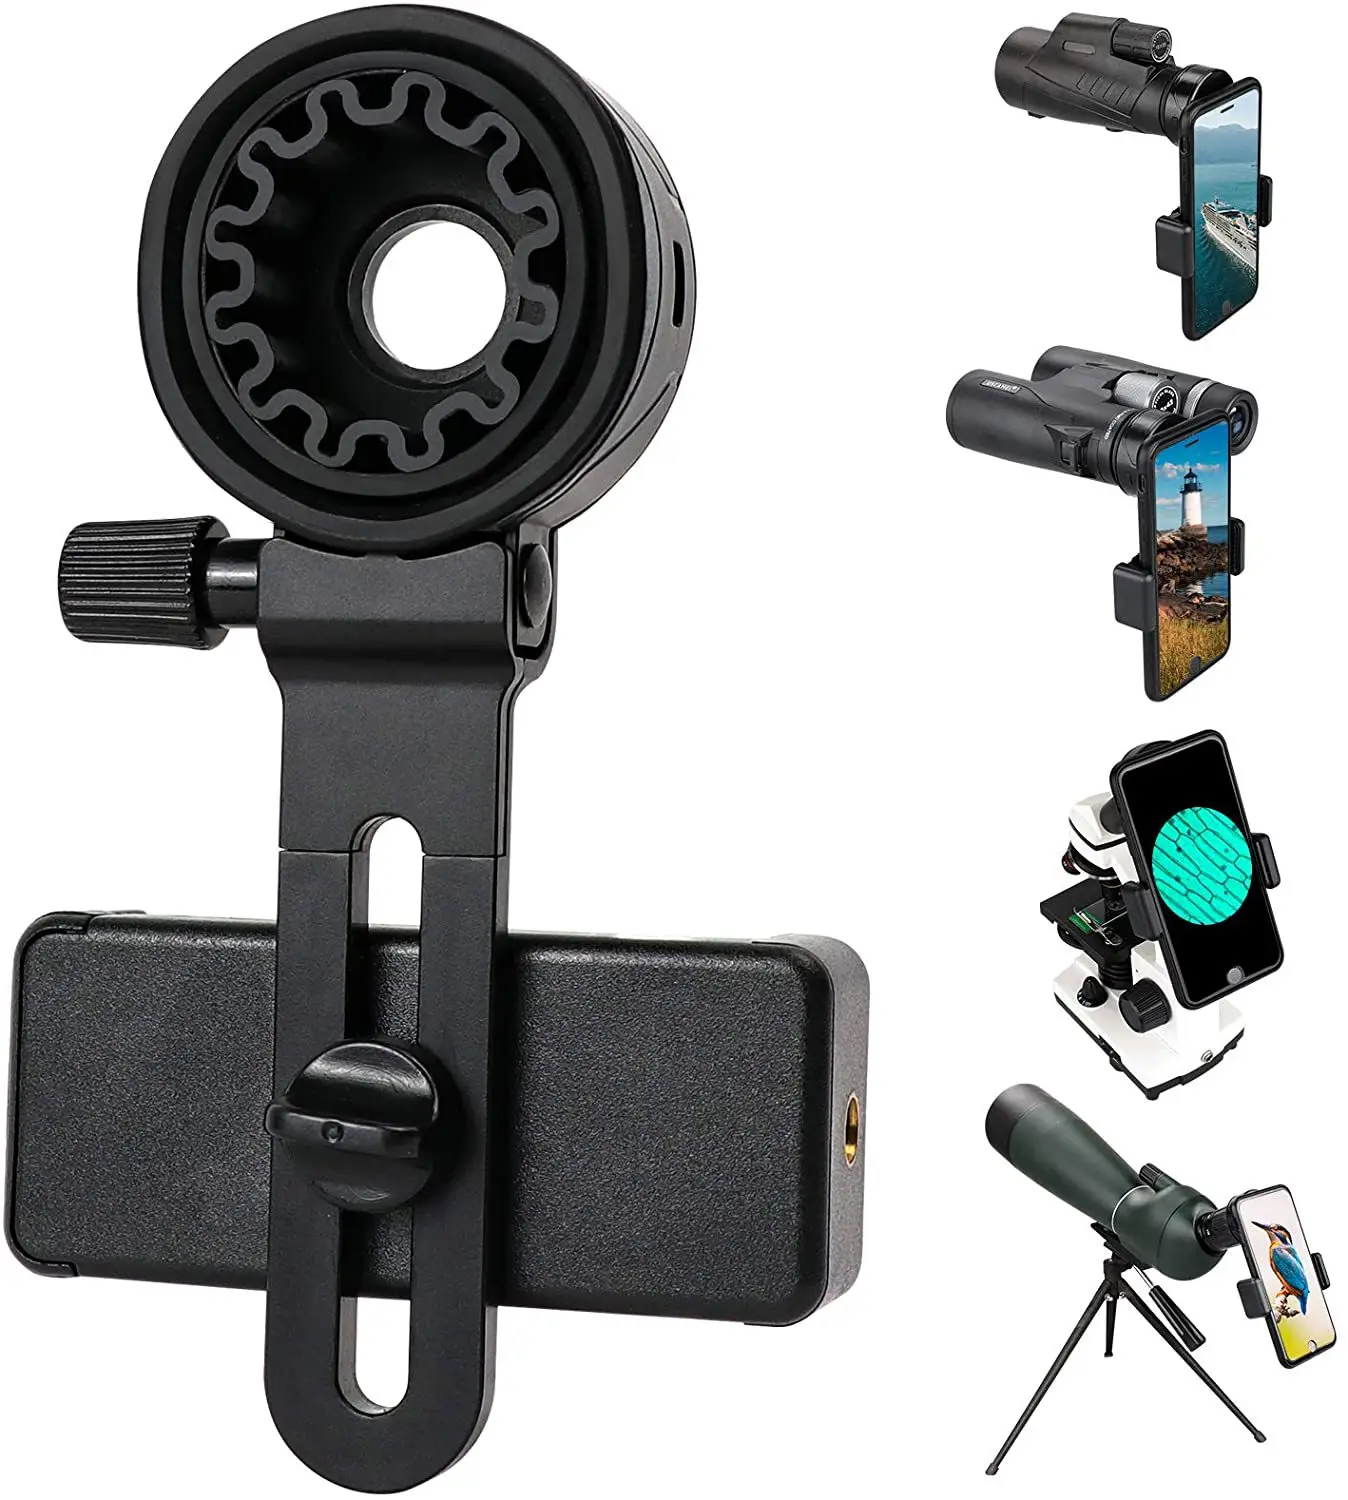 הטלסקופ תמיכה עינית, חיצונית, ציוד ציד, Riflescope, משקפת, התמקדות, D: 62-105mm